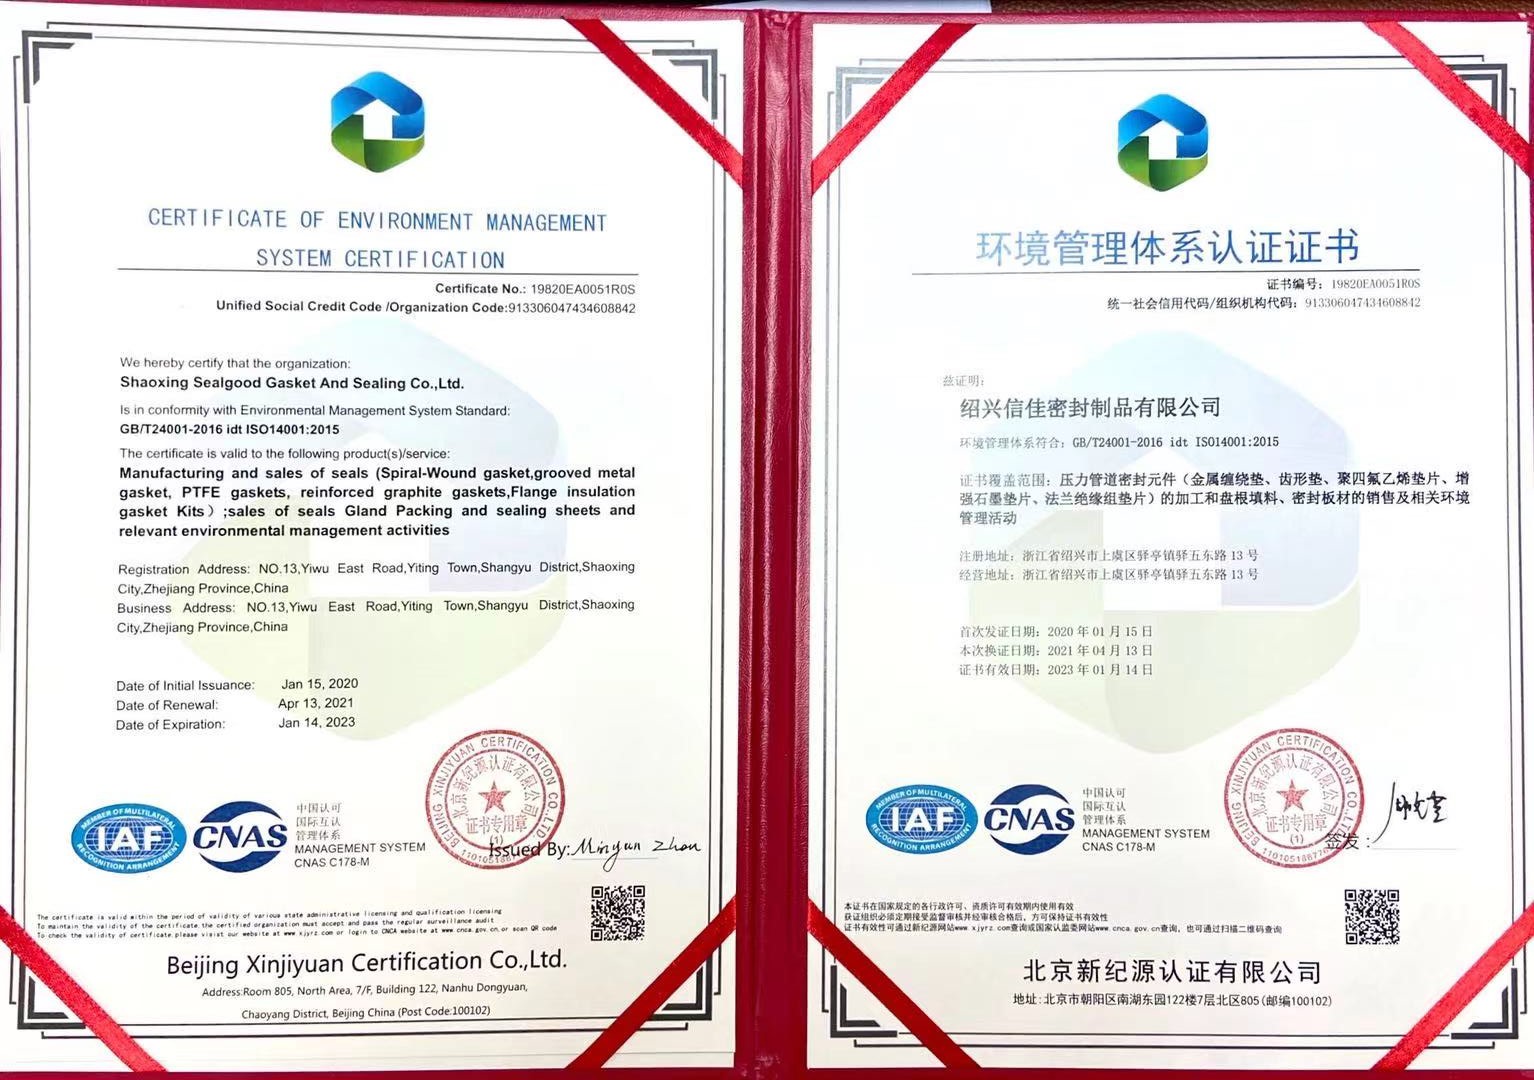 حصلت Shaoxing Sealgood gasket and sealing Co., Ltd. على شهادة جديدة